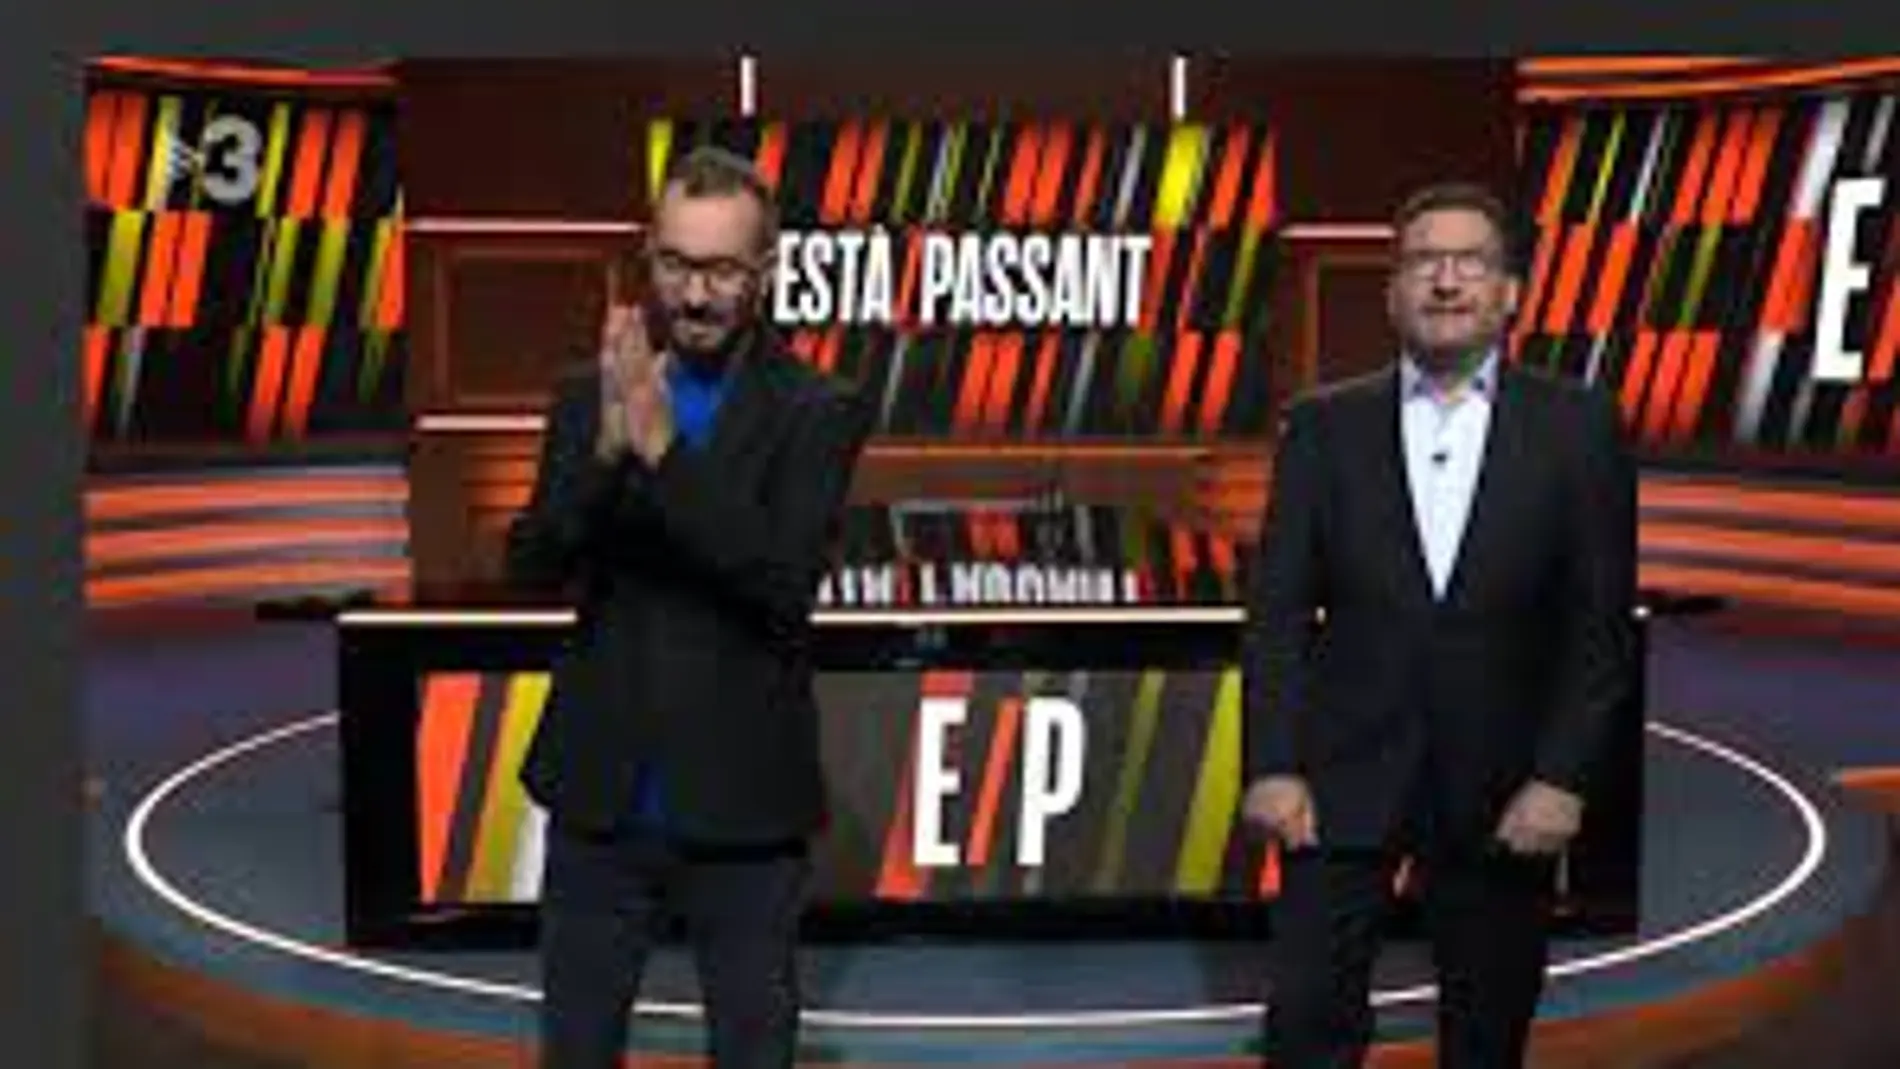 El programa "Està Passant" de TV3 con sus presentadores Oscar Andreu y Toni Soler ridiculiza a la Princesa Leonor con una imitadora 